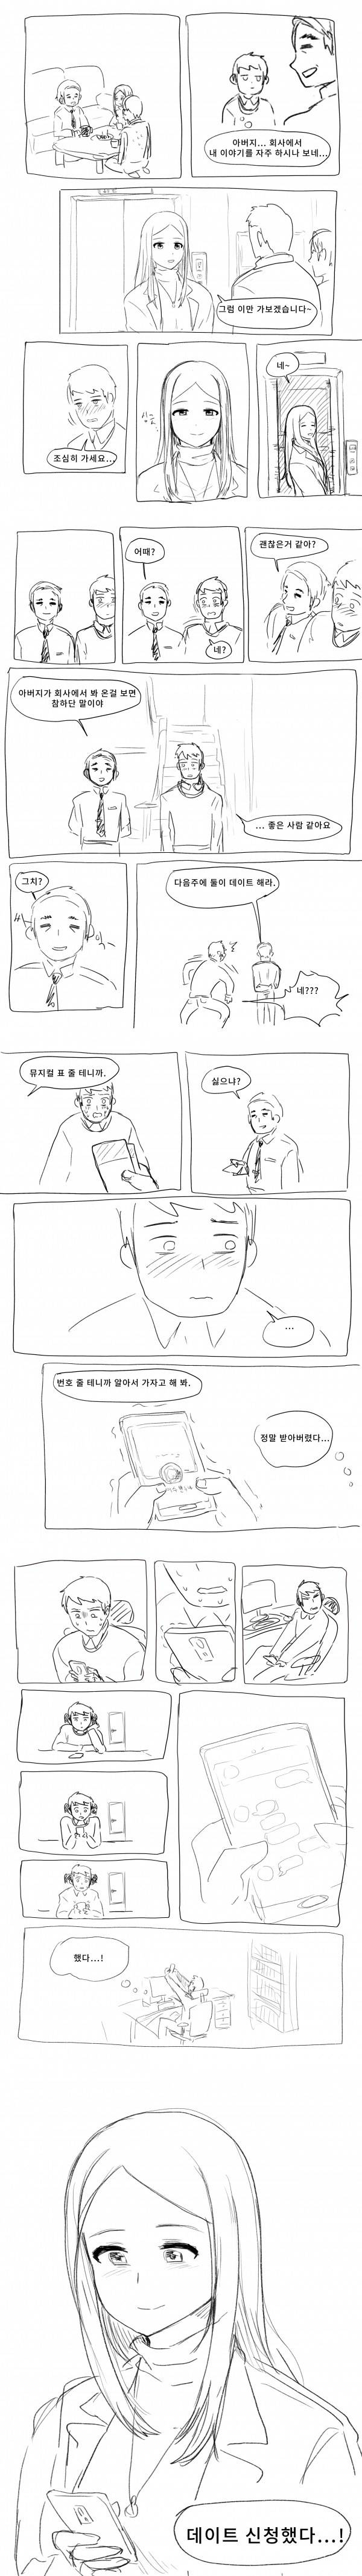 아빠 회사 여직원 소개받는 만화 .manhwa | 인스티즈